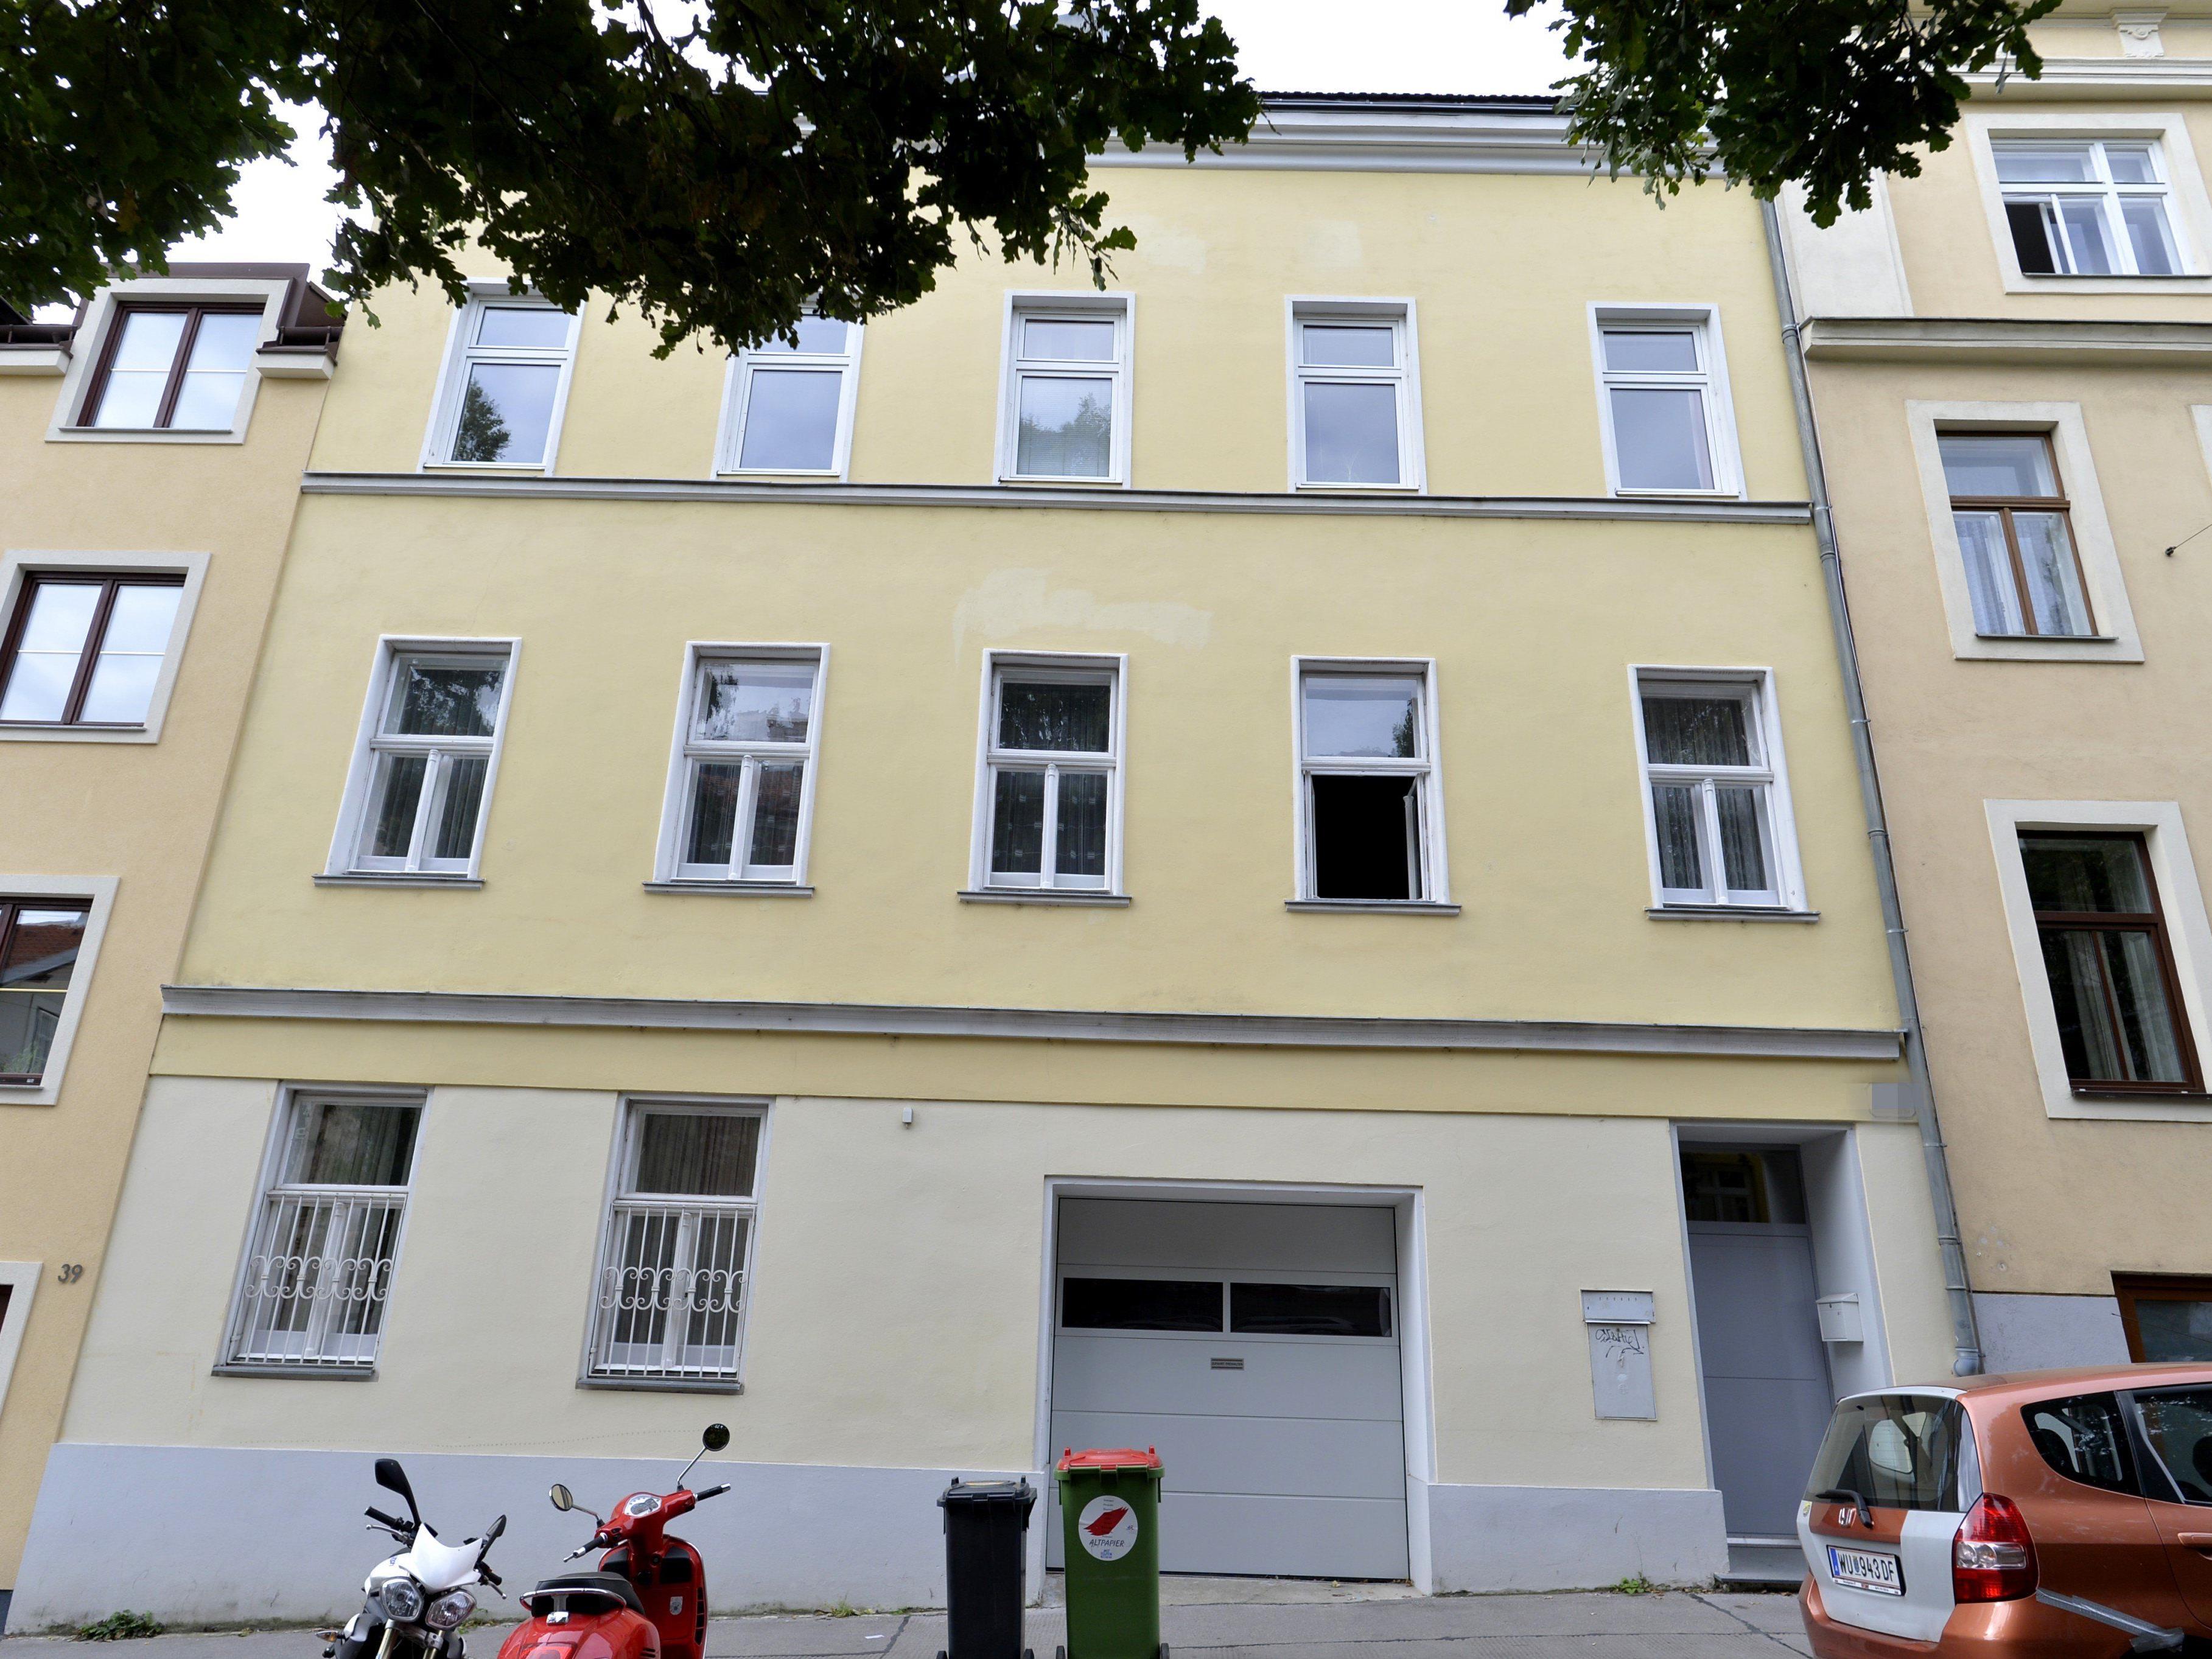 Bluttat in Wien-Währing: Ein 42-jähriger Mann wurde erschossen